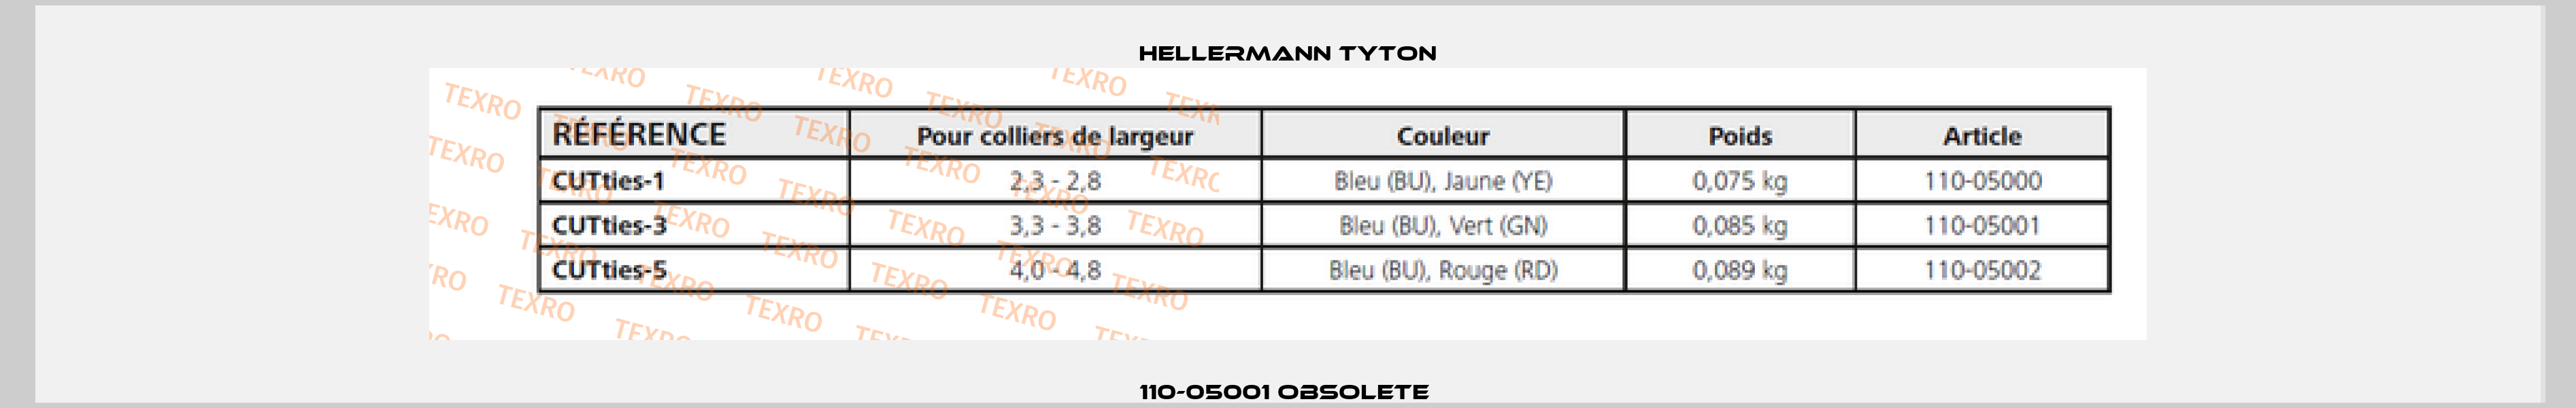 110-05001 obsolete  Hellermann Tyton